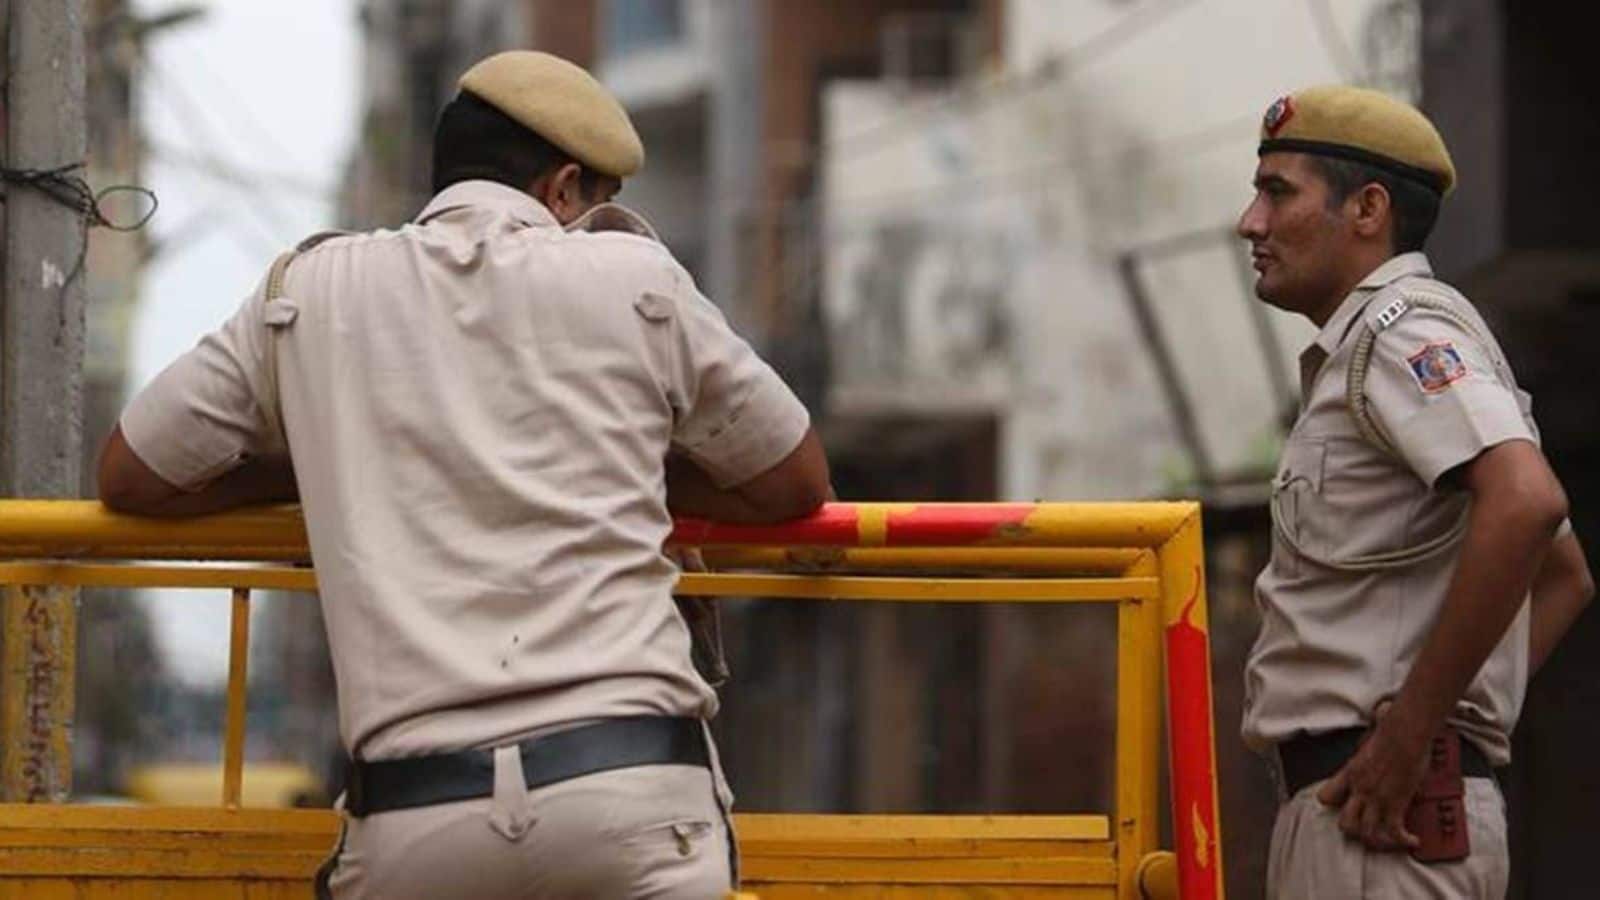 Mumbai: 3 custodial suicides in 9 months raise concerns